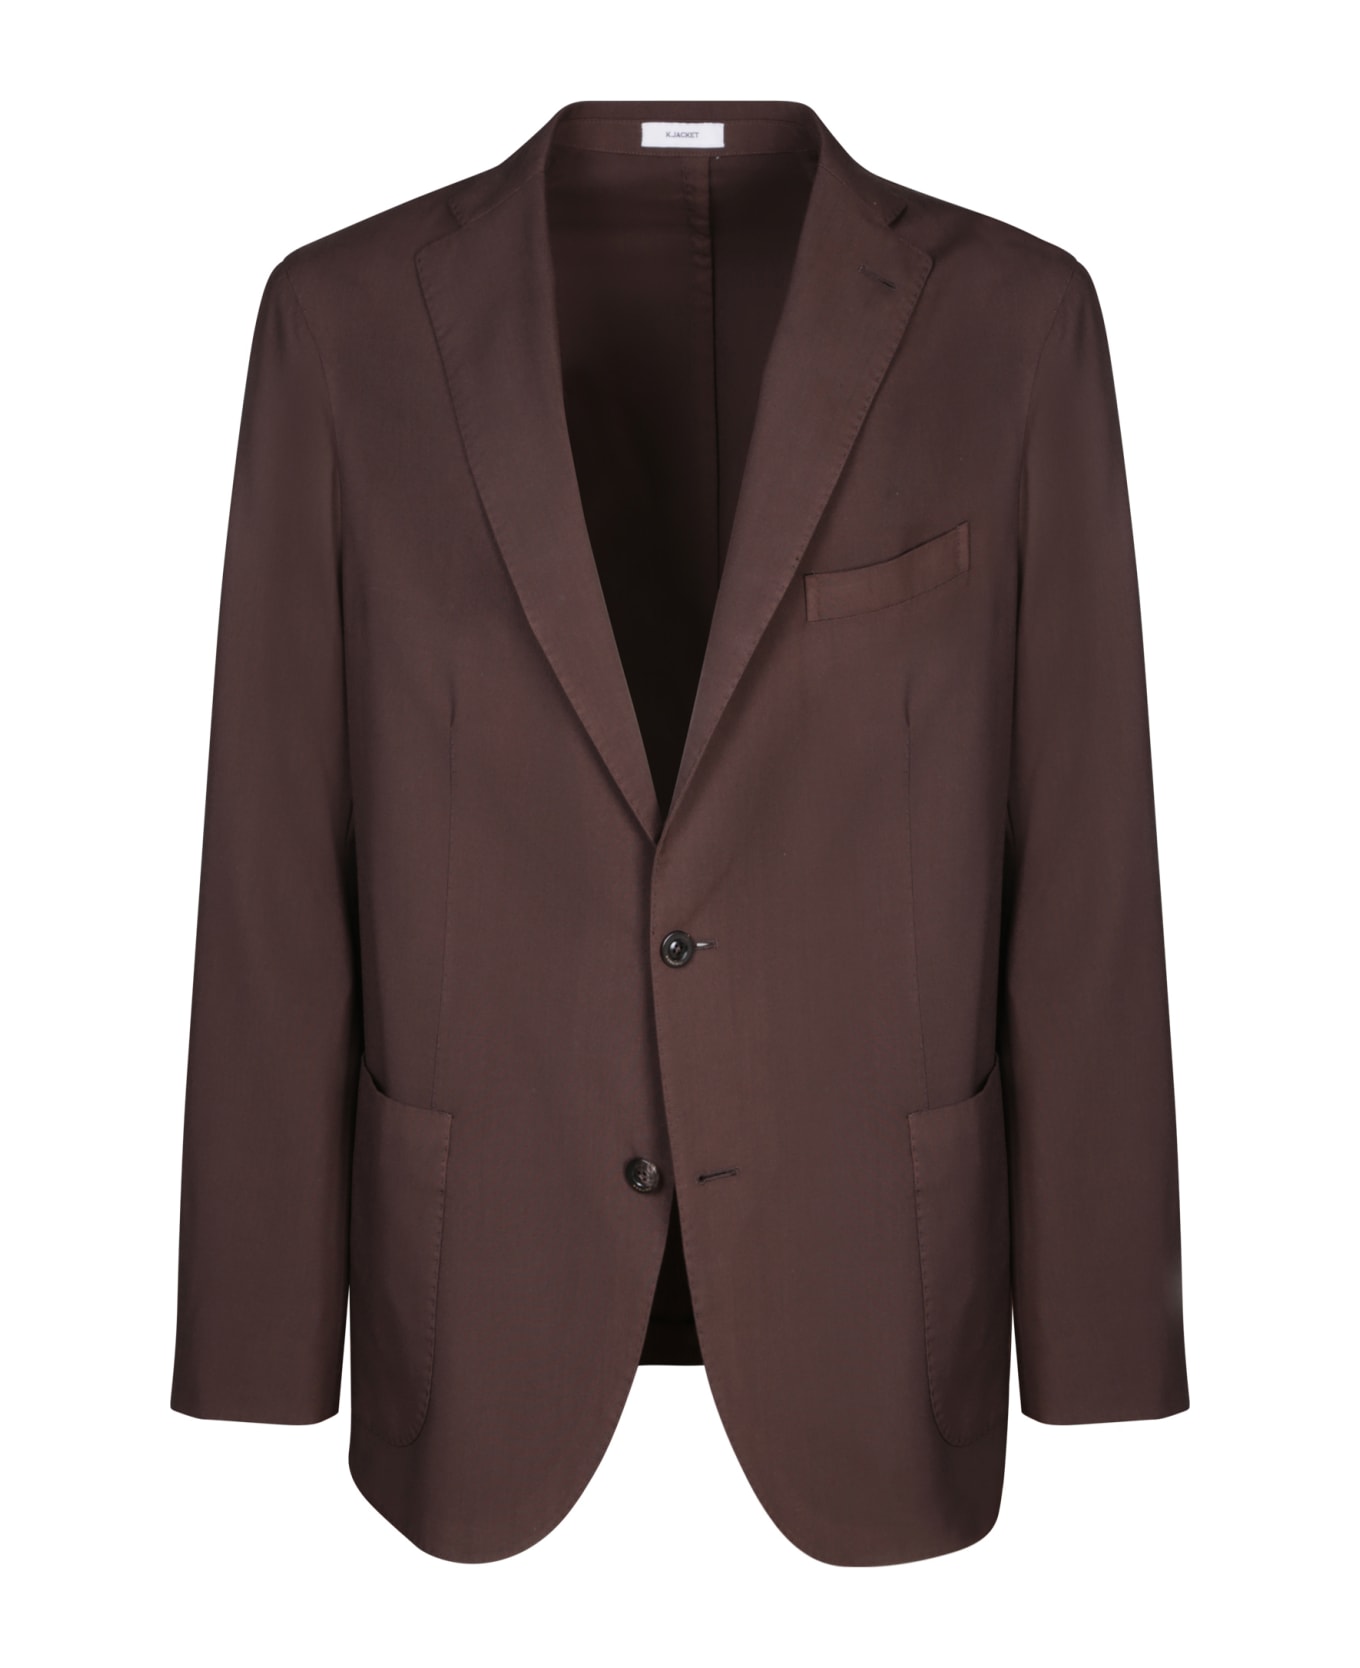 Boglioli Hopsack Brown Suit - Brown